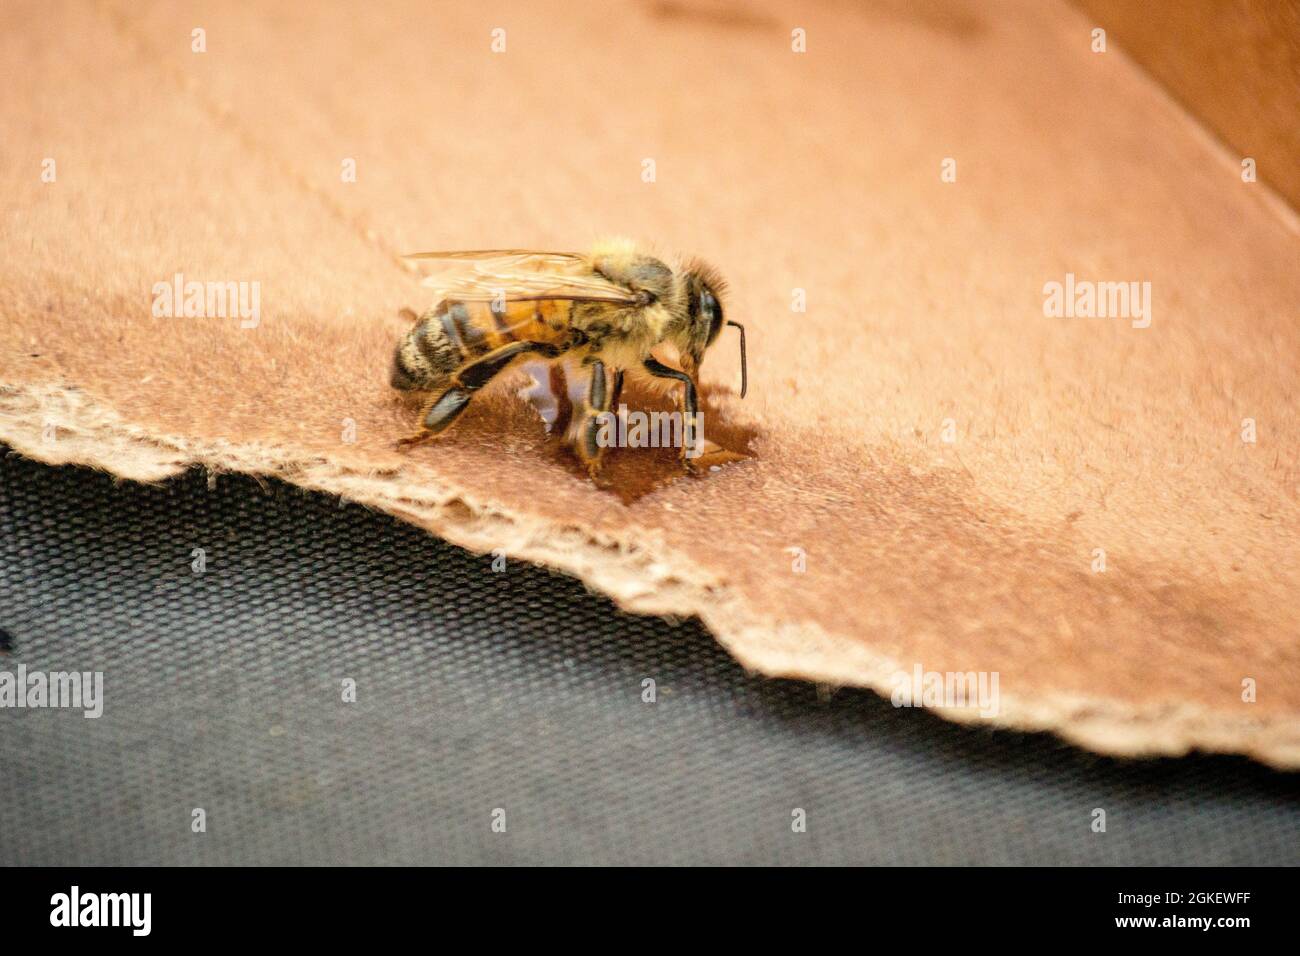 La faucily abeille se férant sur une petite goutte de miel placée sur un morceau de carton déchiré. L'abeille s'est retrouvée et s'est envolée. Banque D'Images